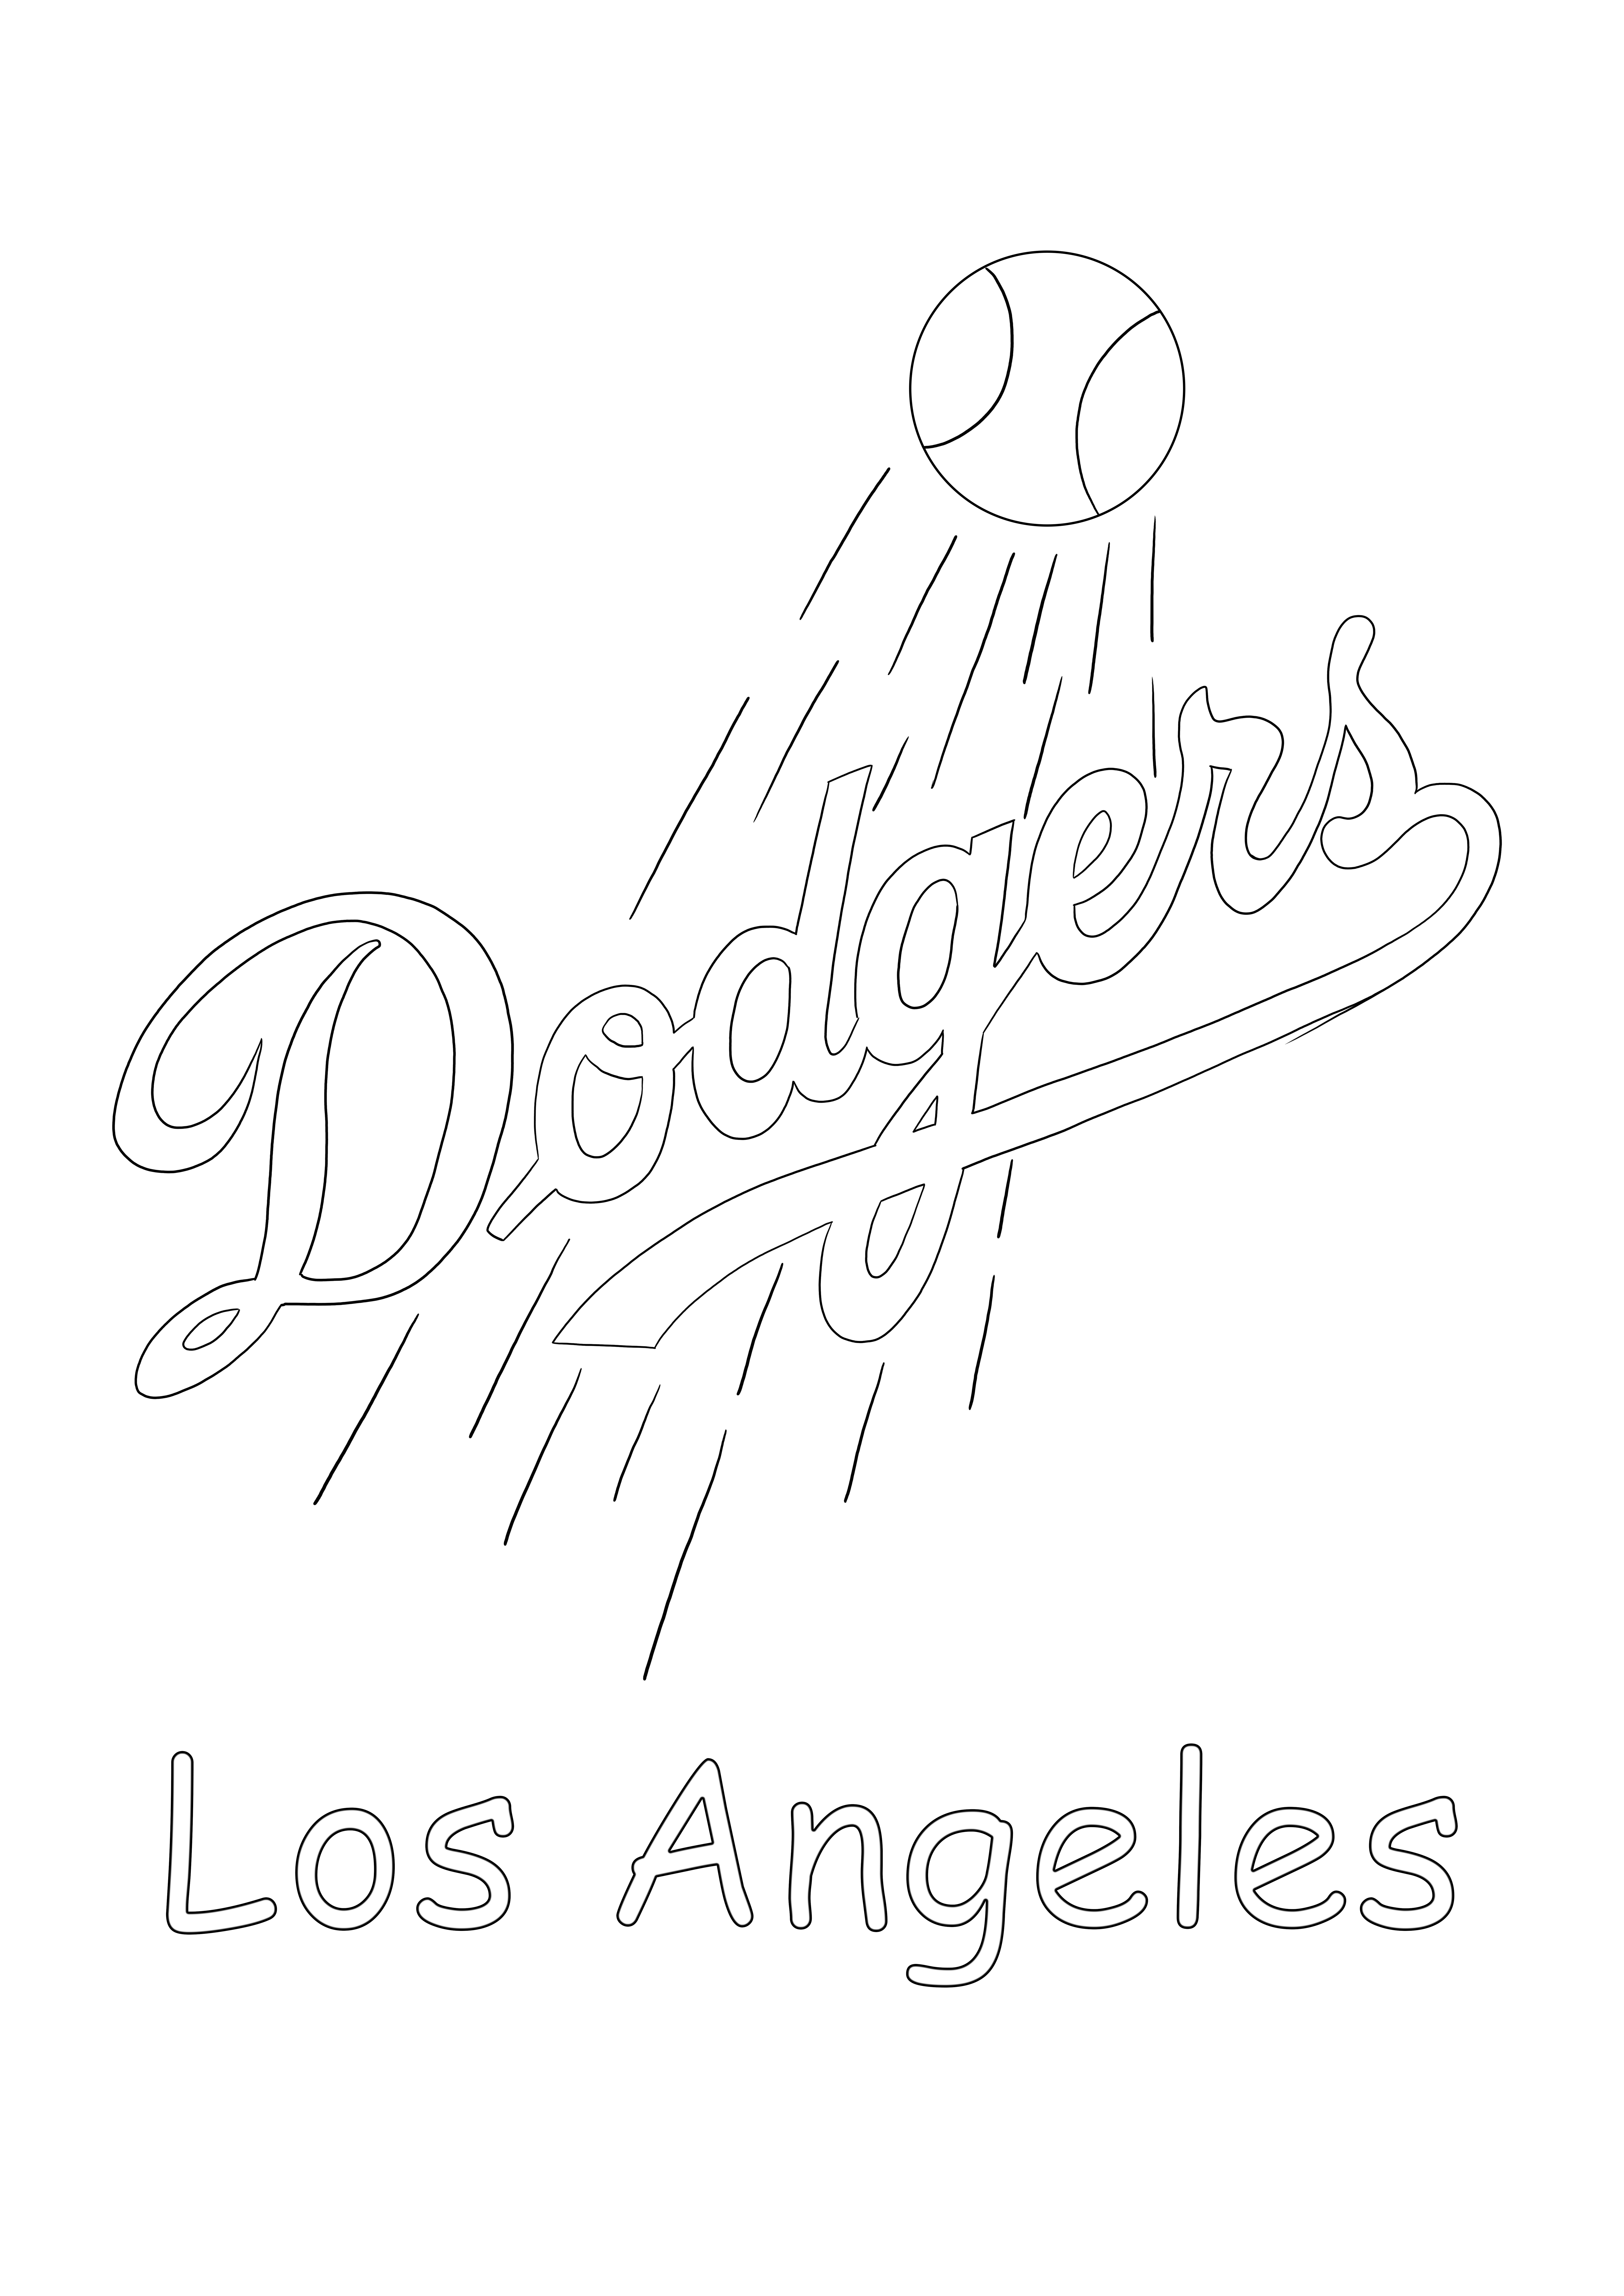 Logotipo do Los Angeles Dodgers grátis para imprimir e colorir para todos os fãs da MLB